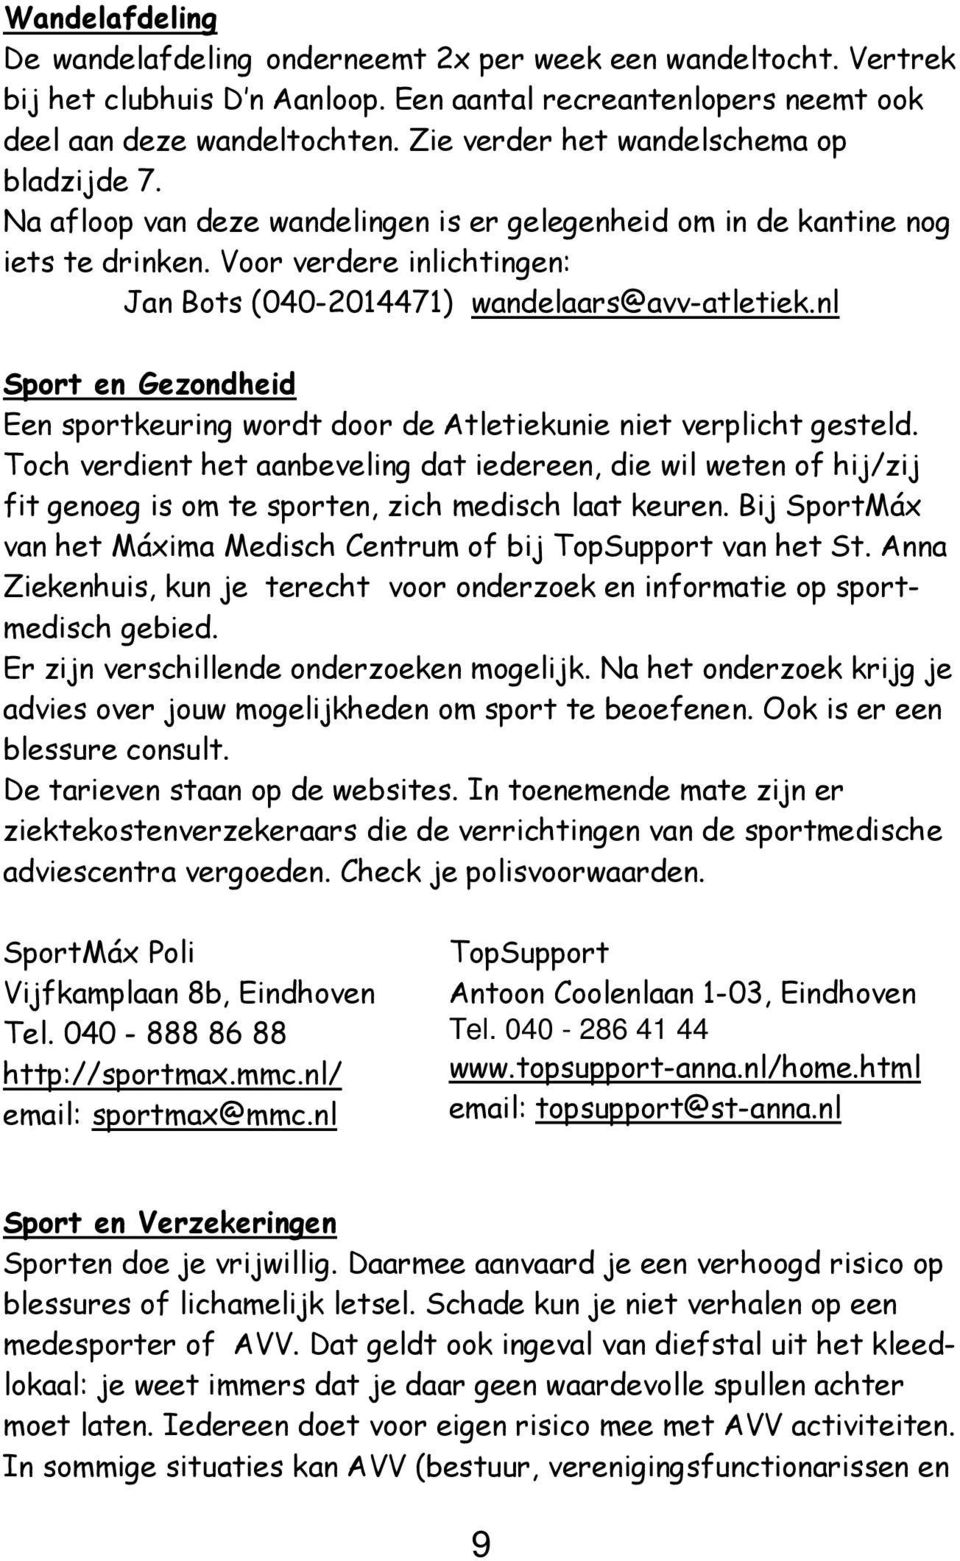 Voor verdere inlichtingen: Jan Bots (040-2014471) wandelaars@avv-atletiek.nl Sport en Gezondheid Een sportkeuring wordt door de Atletiekunie niet verplicht gesteld.